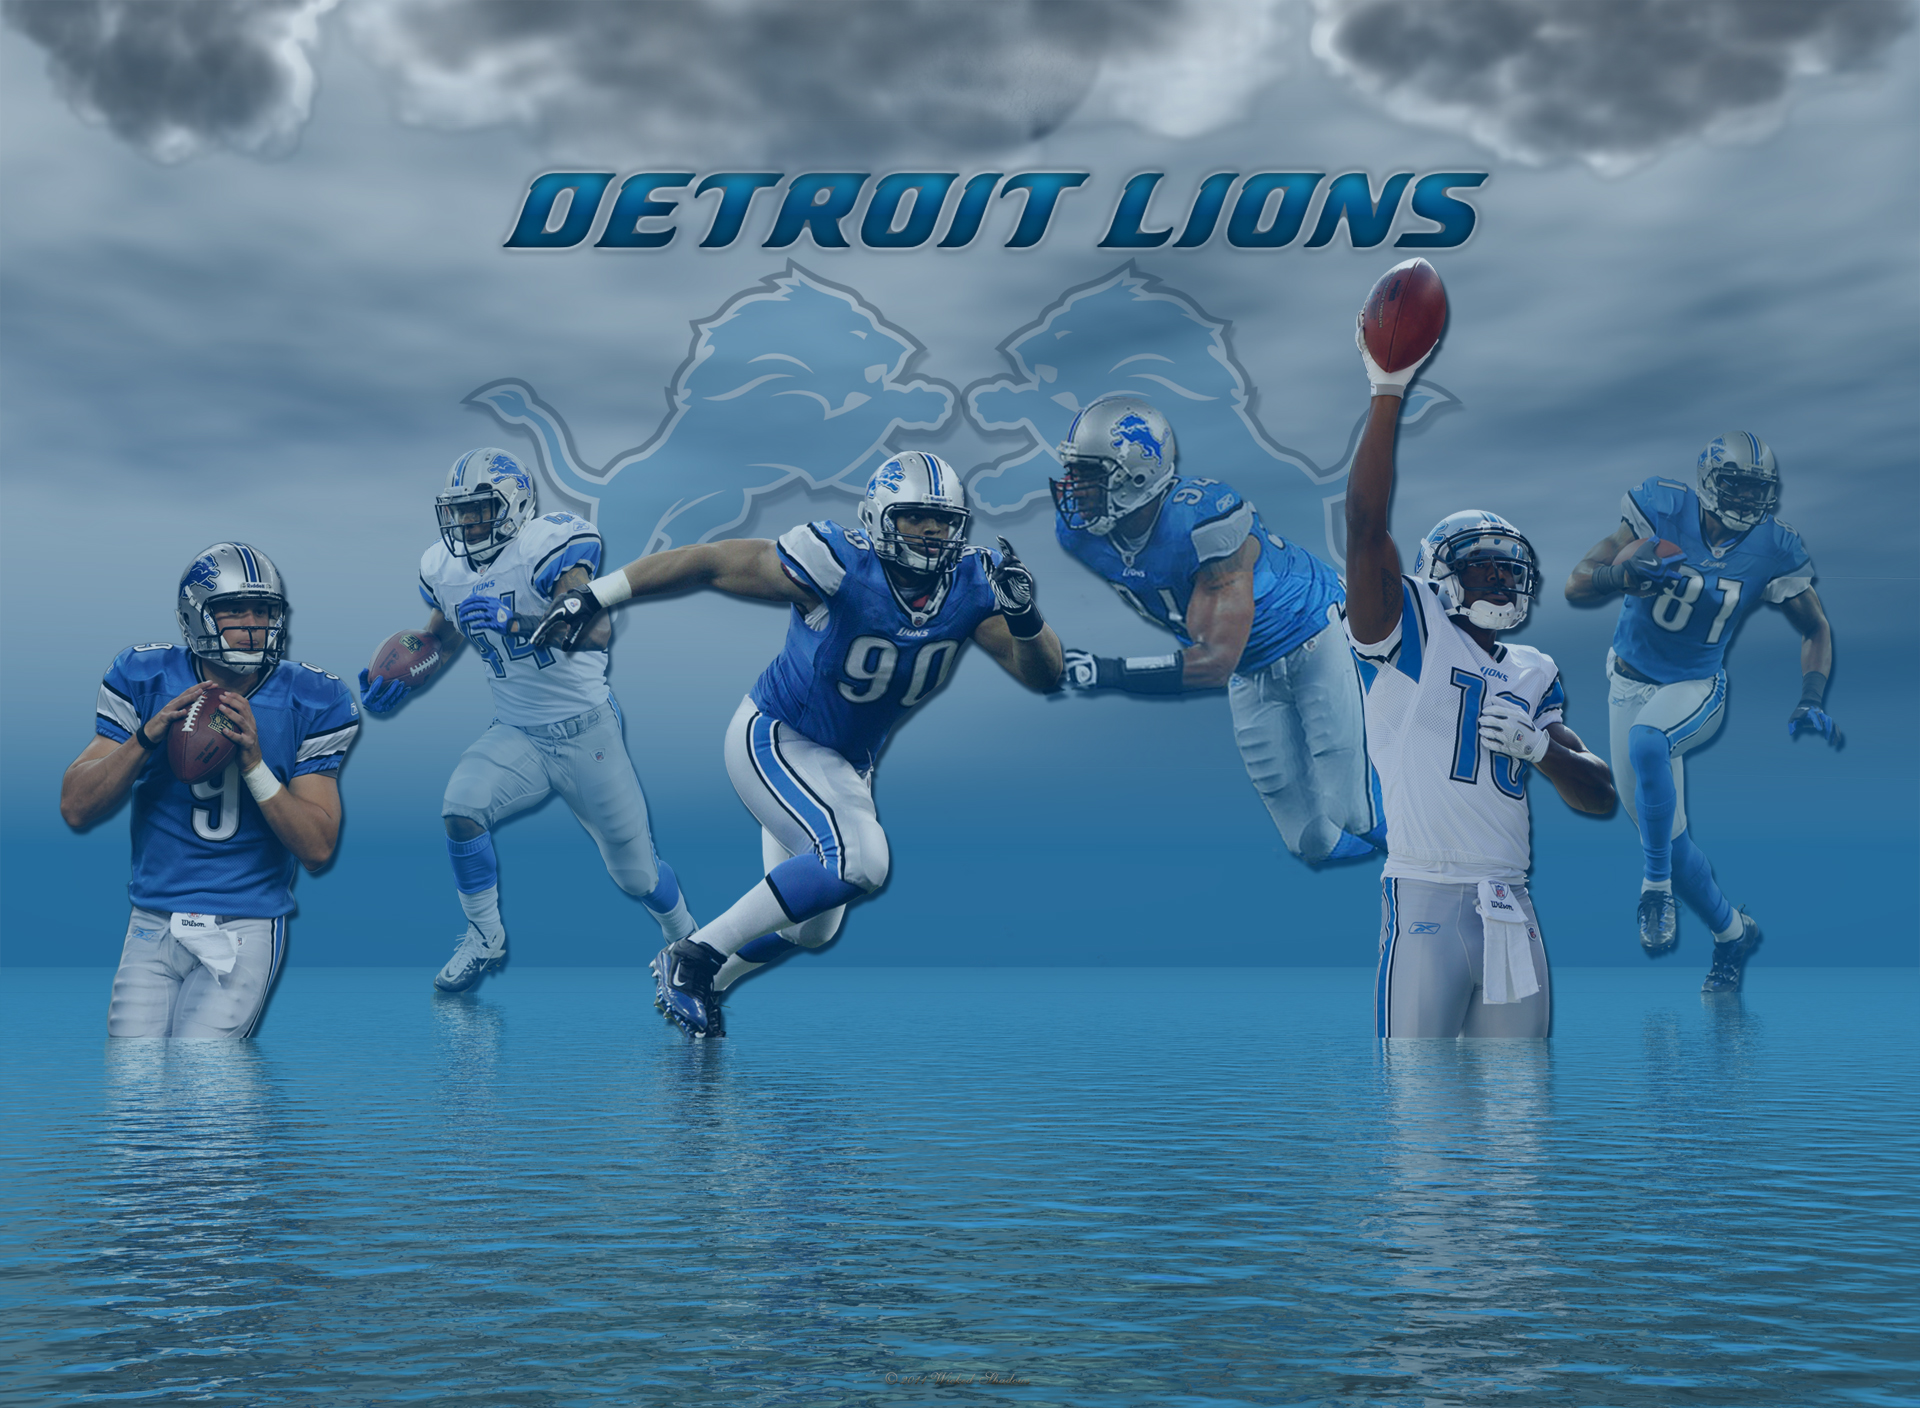 1. Detroit Lions Nail Art - wide 6